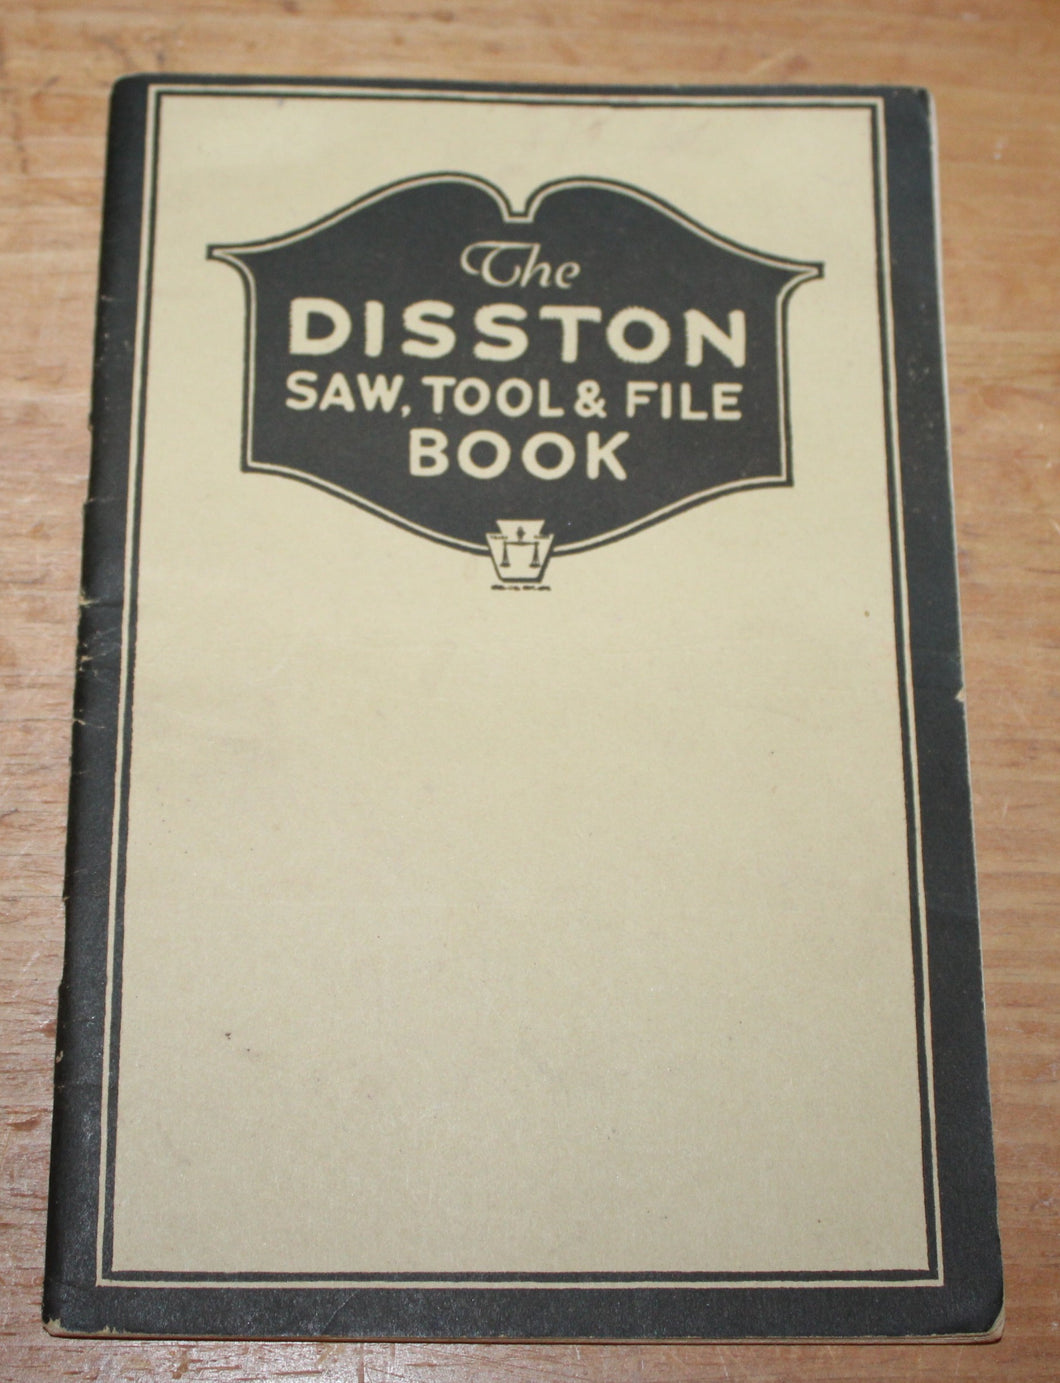 The DISSTON SAW, TOOL & FILE BOOK - 1924